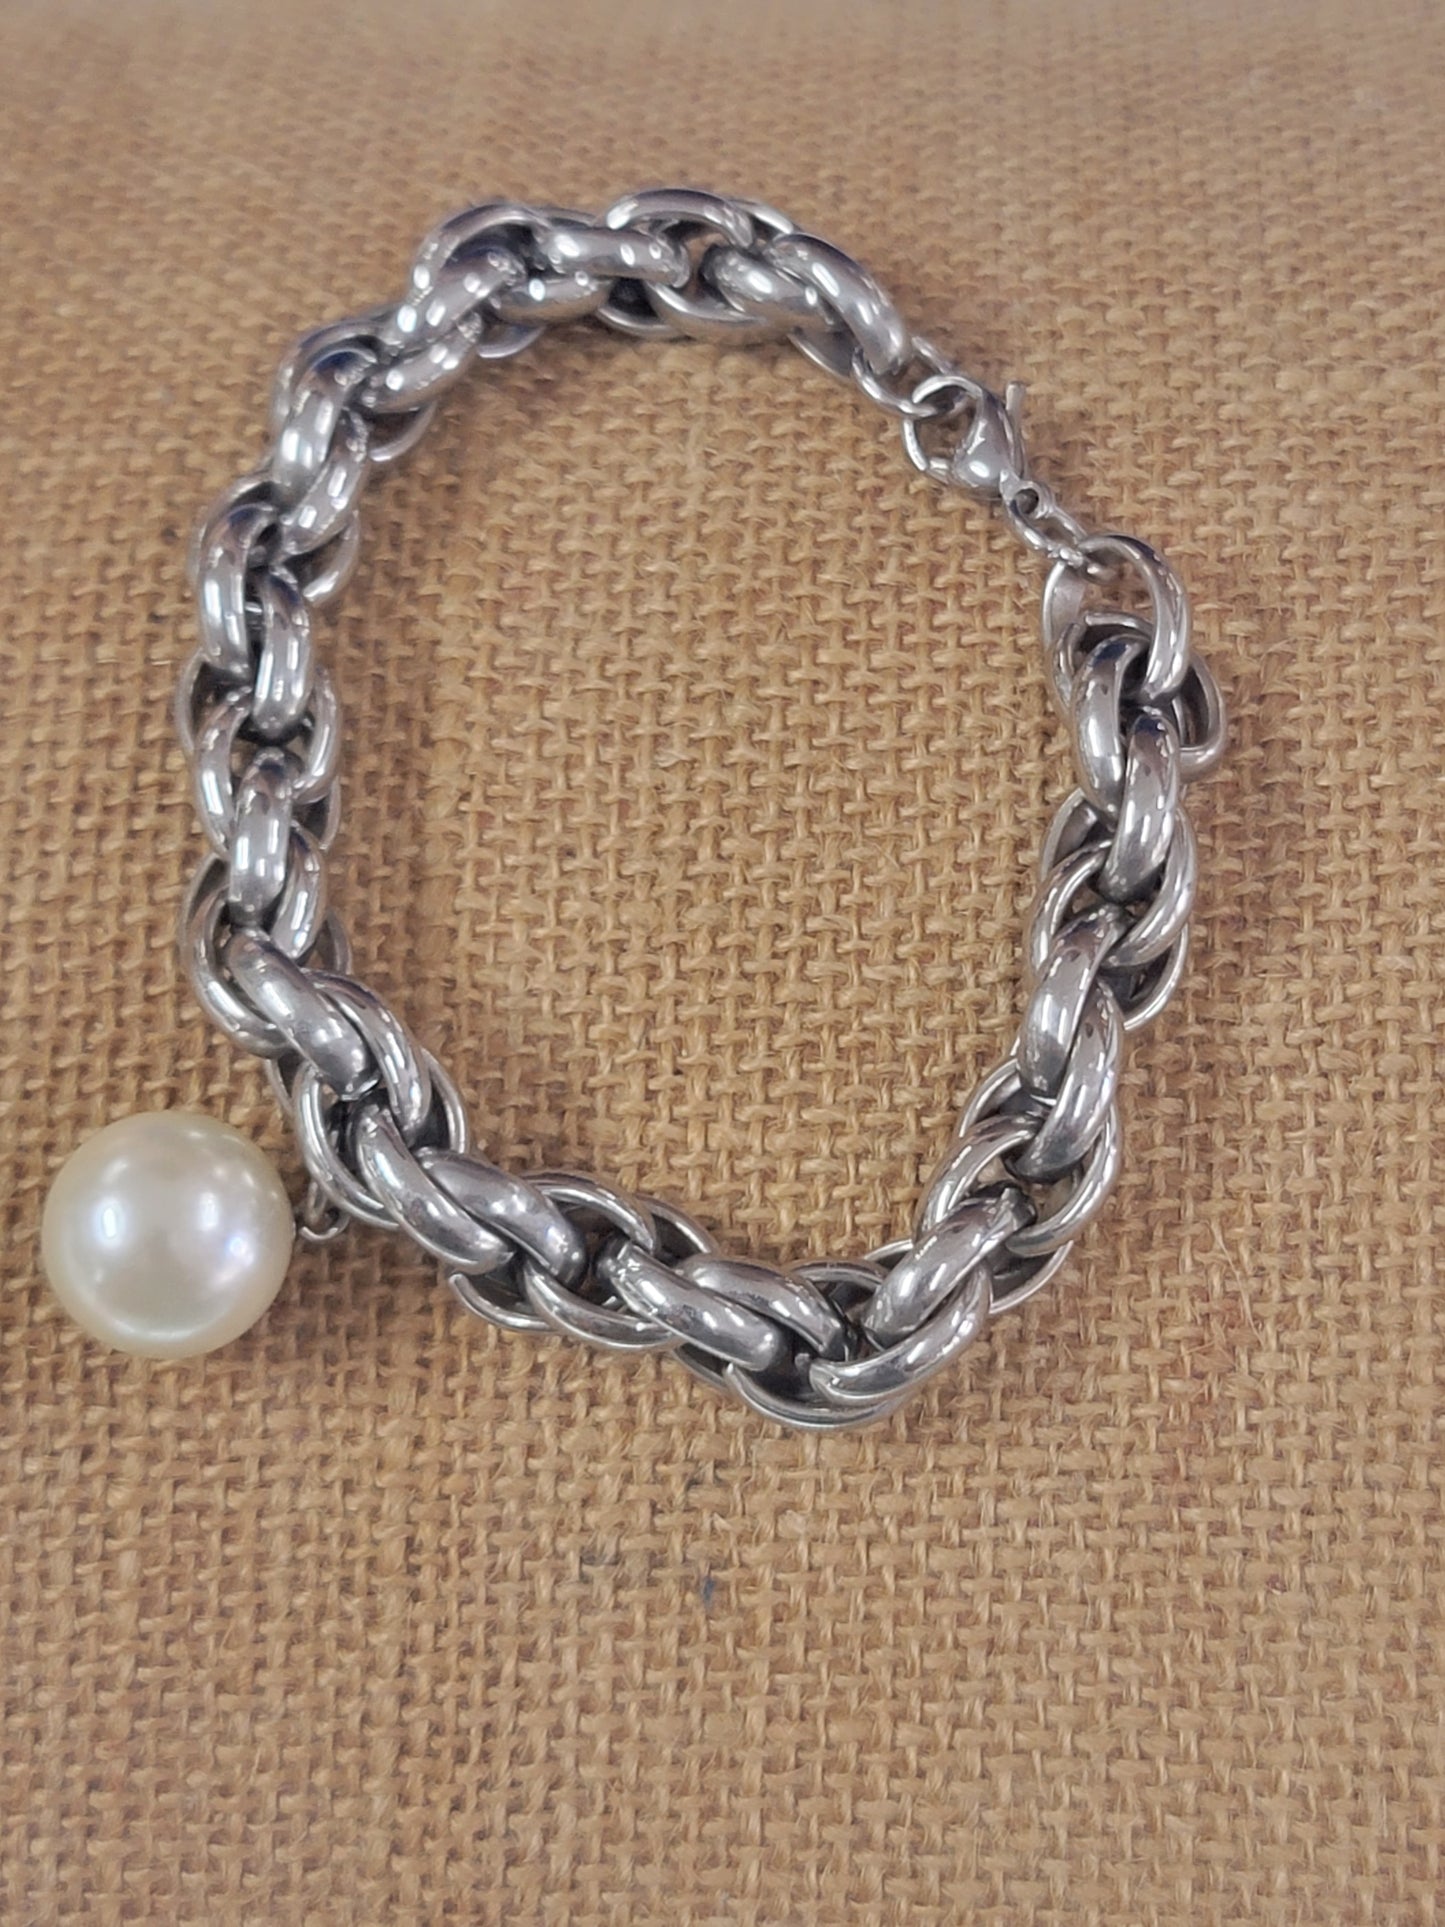 Conjunto de collar y pulsera con colgante de perla y cadena de acero inoxidable